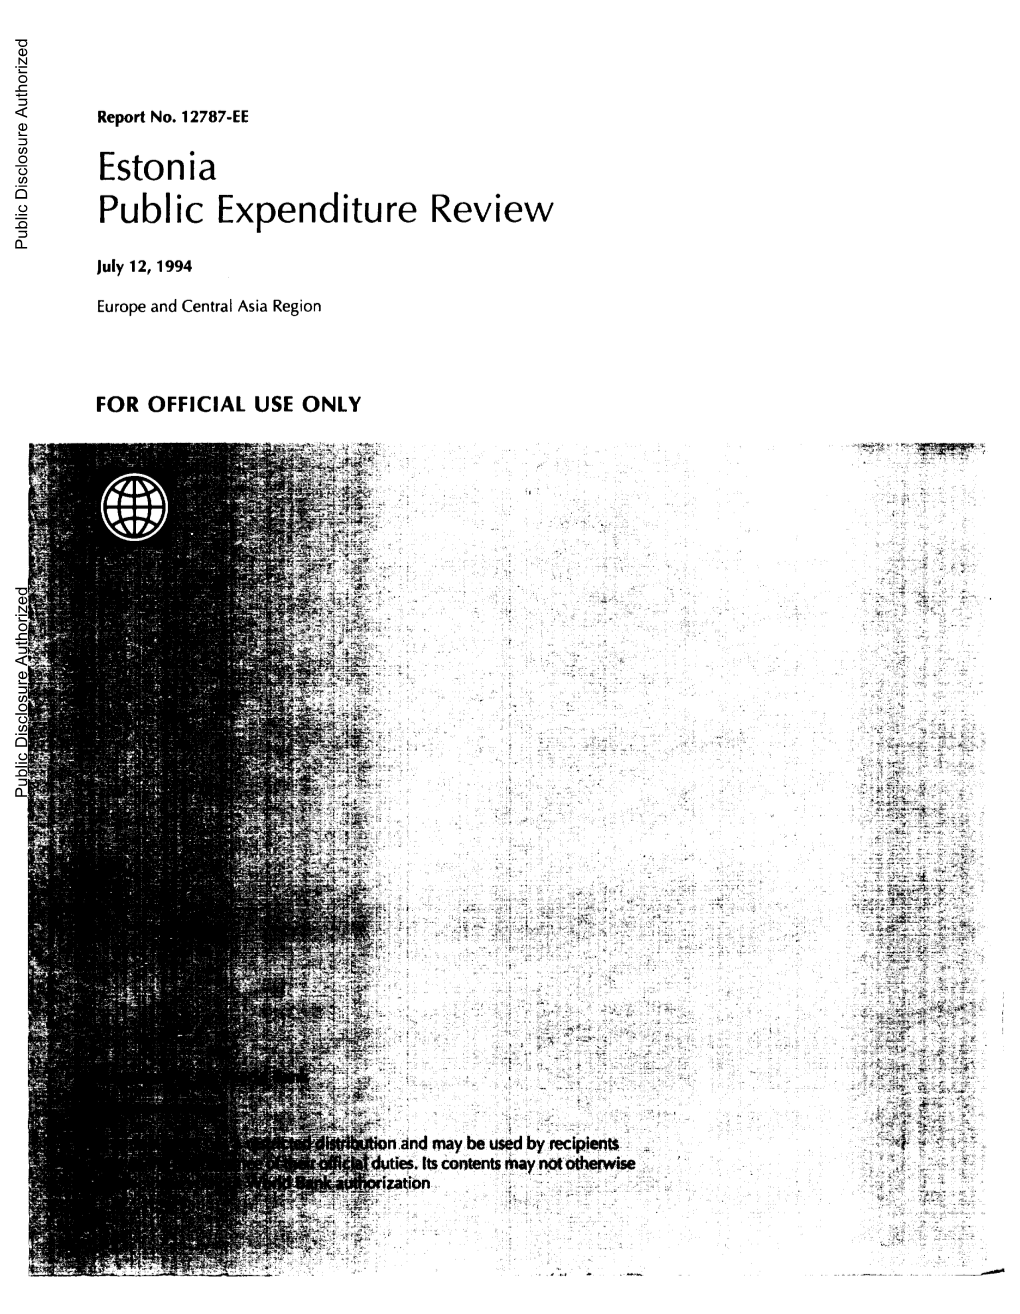 Estonia: Public Expenditure Review